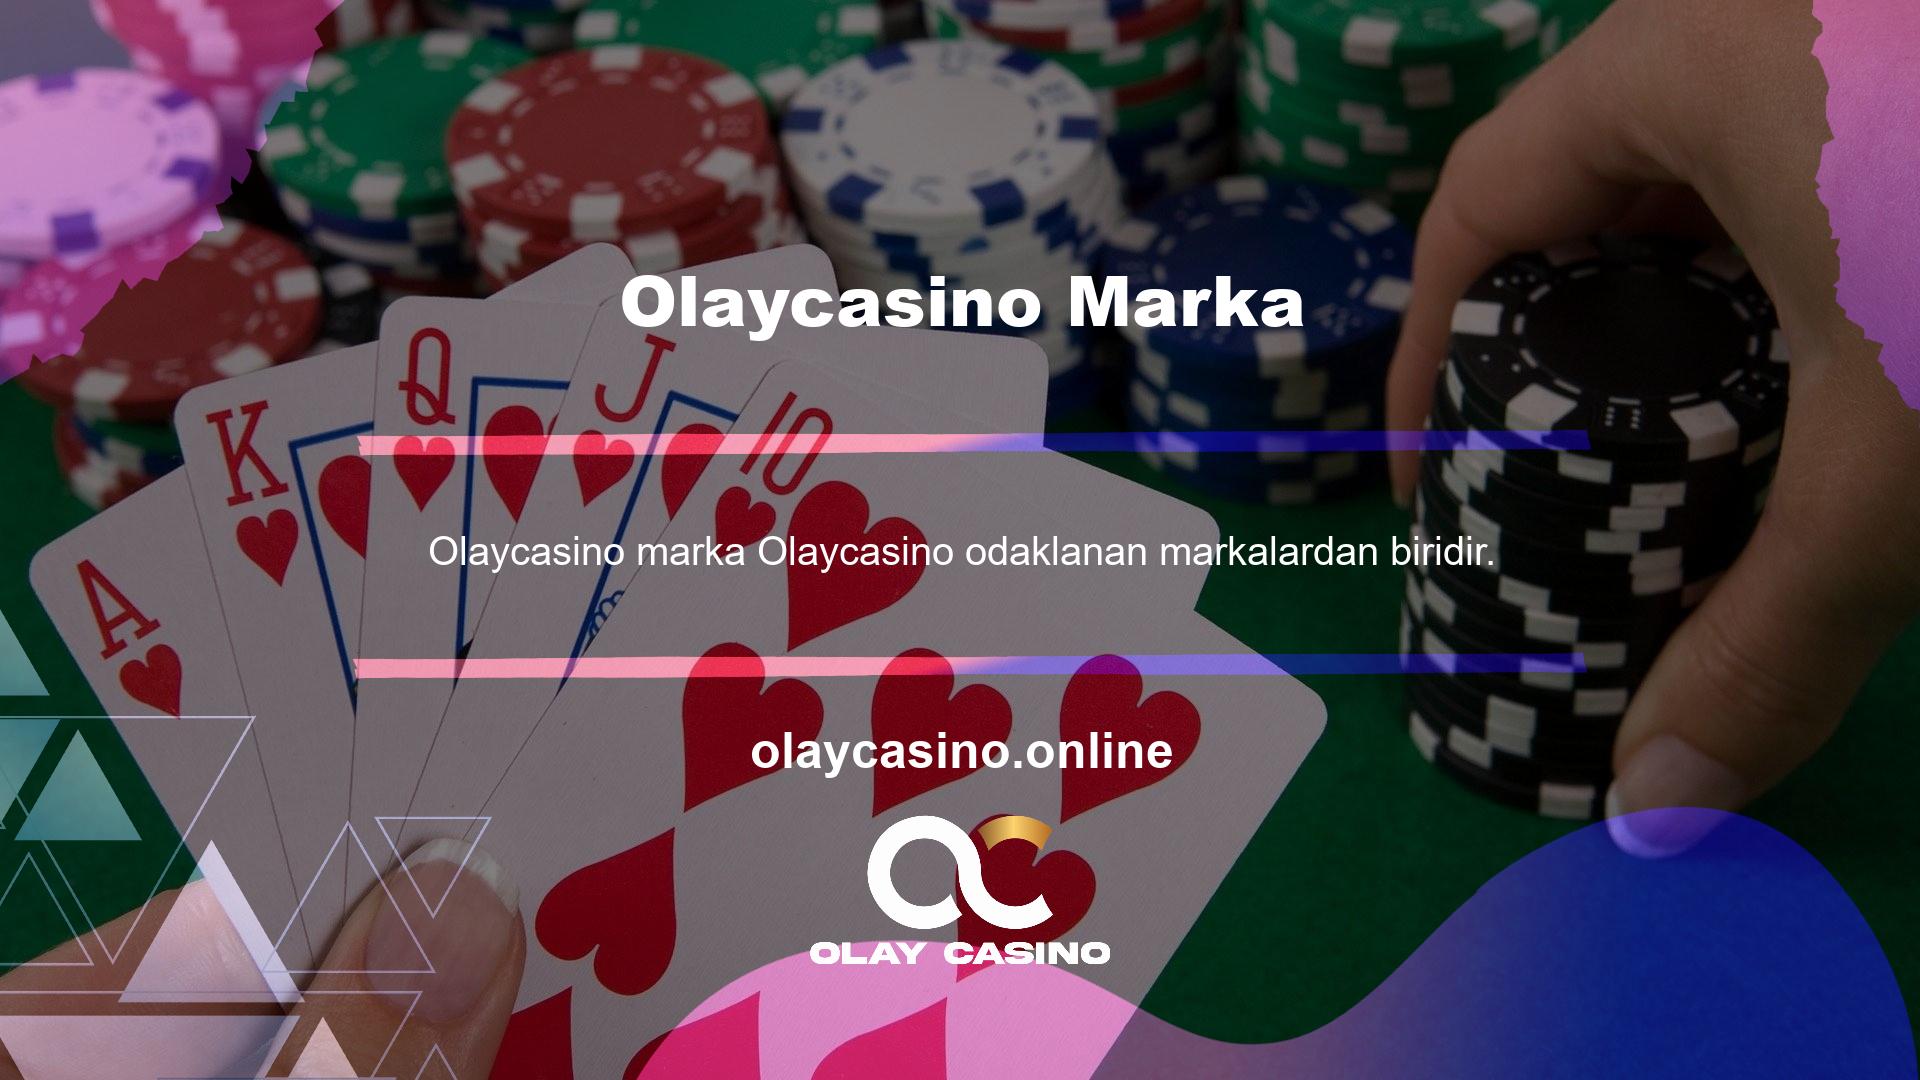 Sitede İngilizce ve Türkçe olarak çok çeşitli bahis ve casino oyunları sunulmaktadır